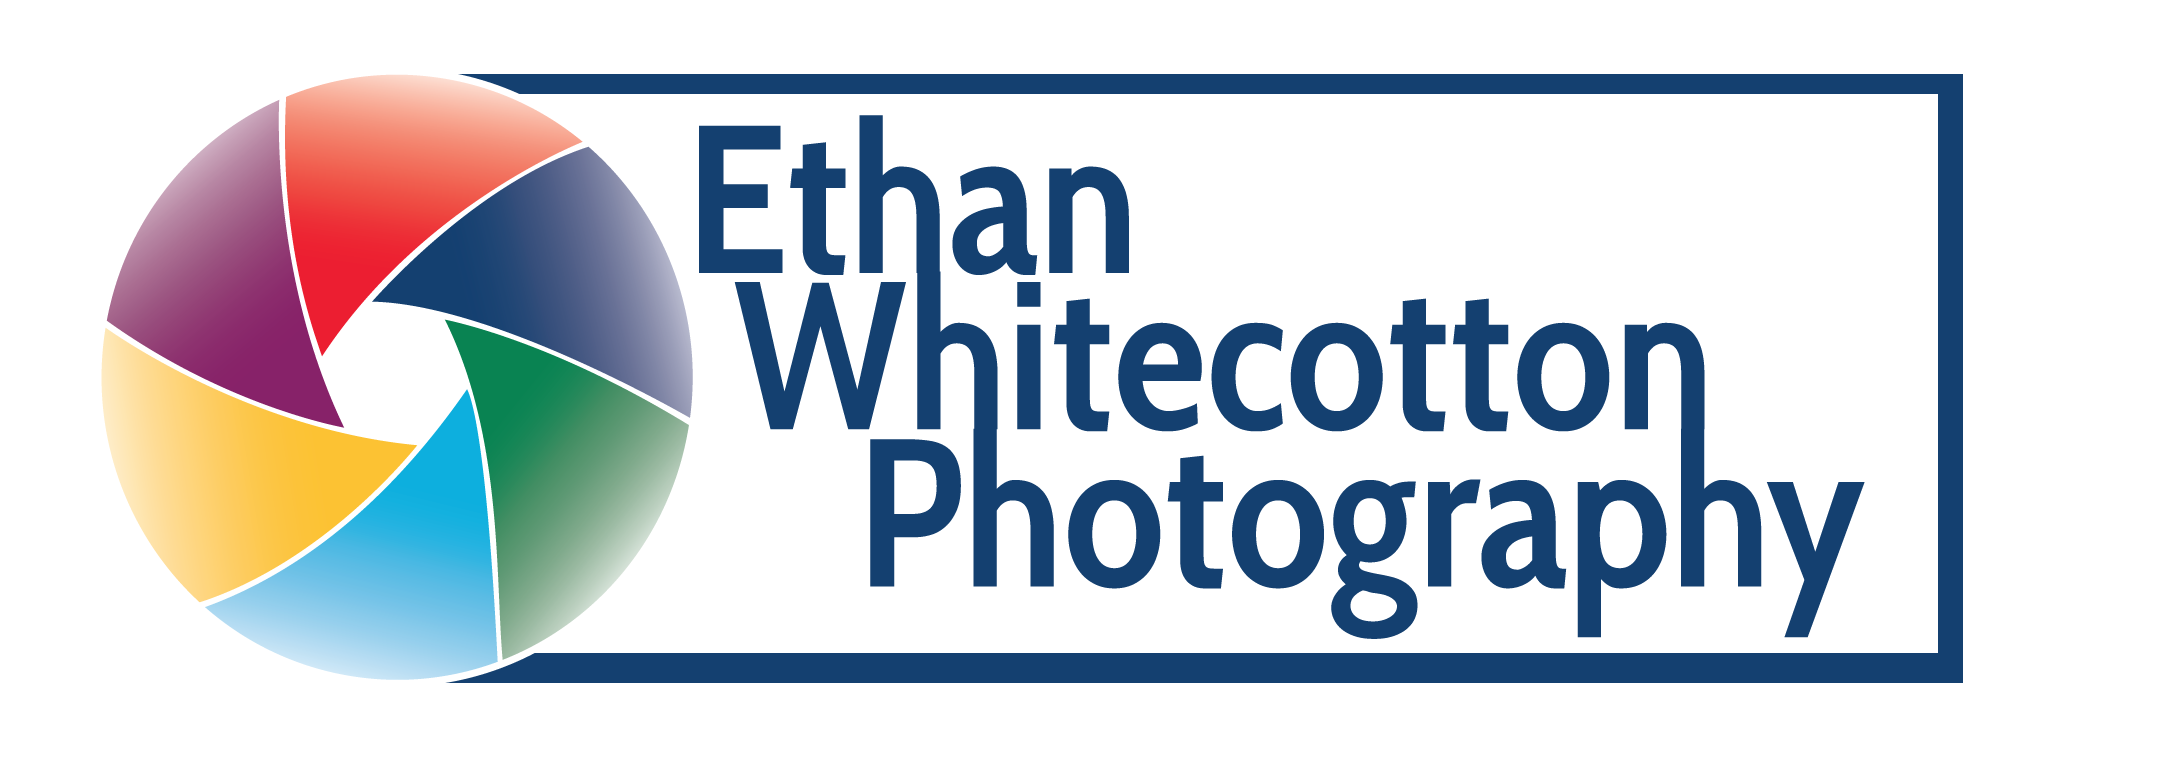 Ethan Whitecotton Photography